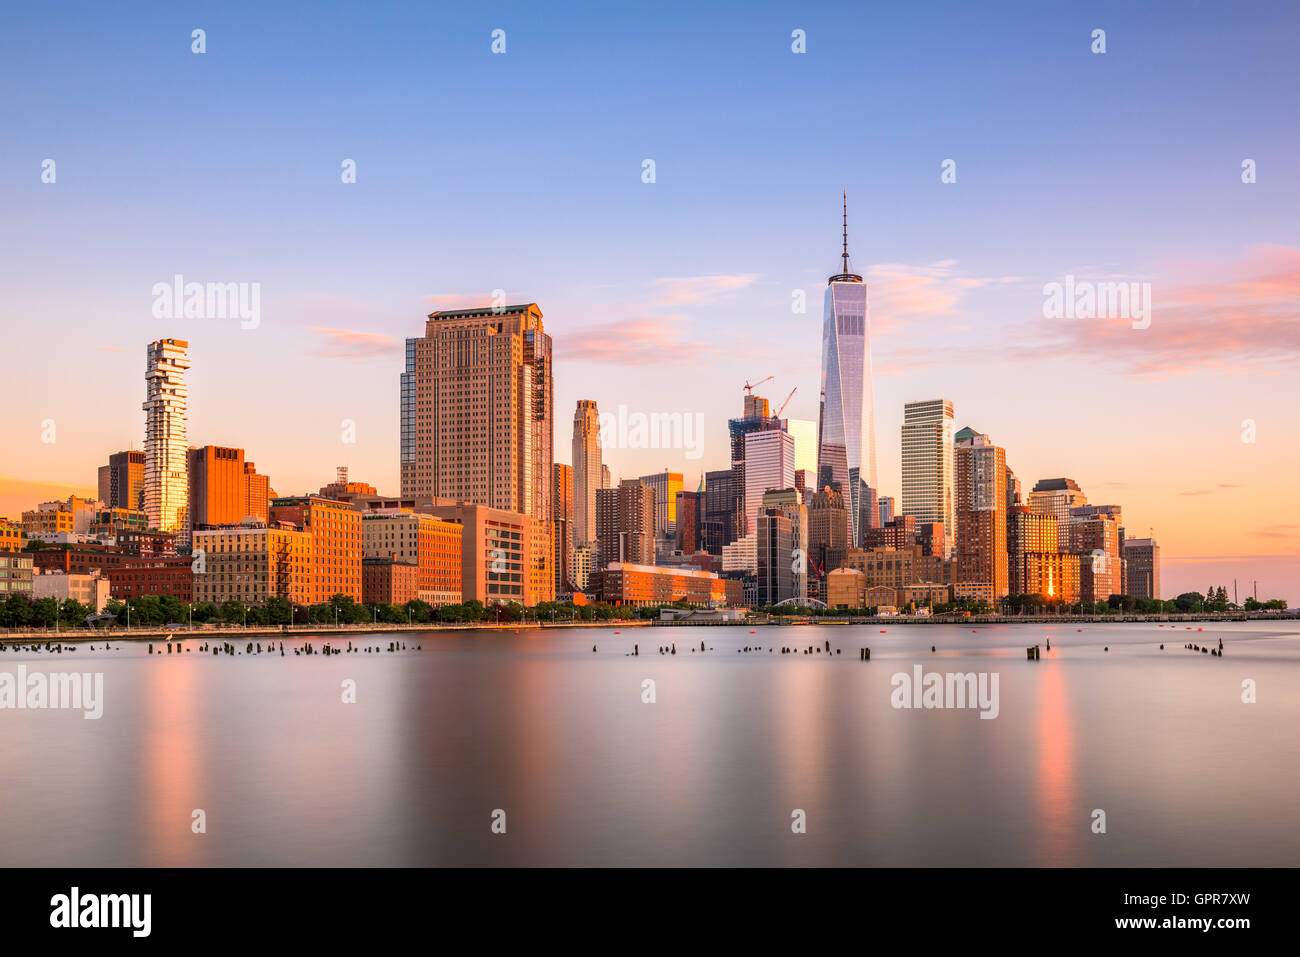 El distrito financiero de la ciudad de Nueva York ciudad. Foto de stock